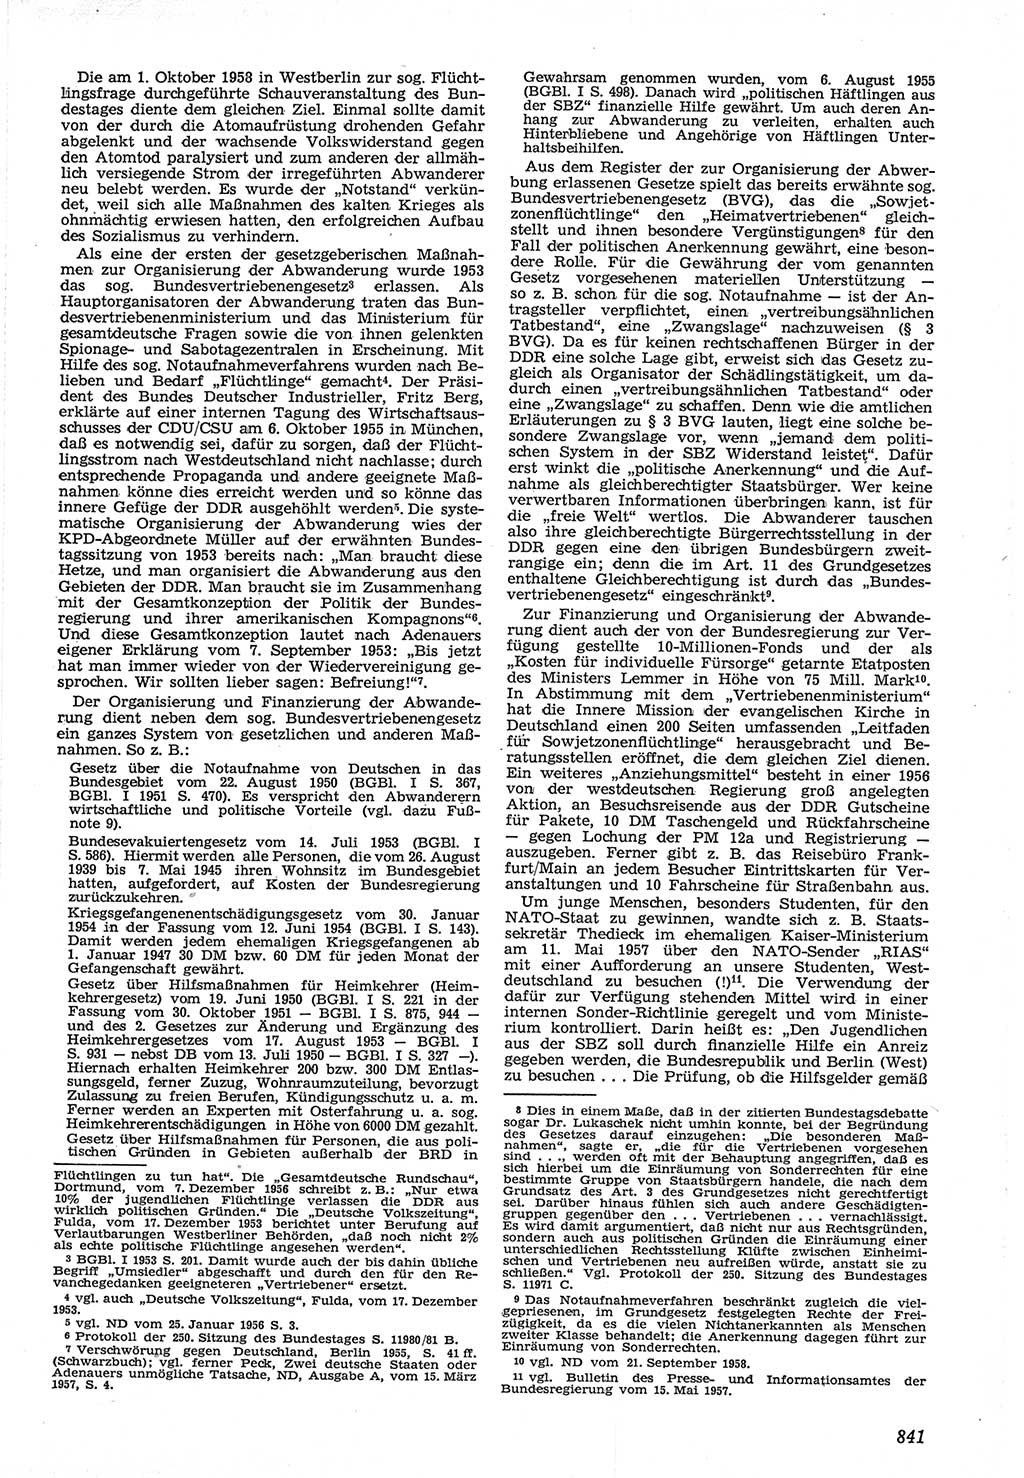 Neue Justiz (NJ), Zeitschrift für Recht und Rechtswissenschaft [Deutsche Demokratische Republik (DDR)], 12. Jahrgang 1958, Seite 841 (NJ DDR 1958, S. 841)